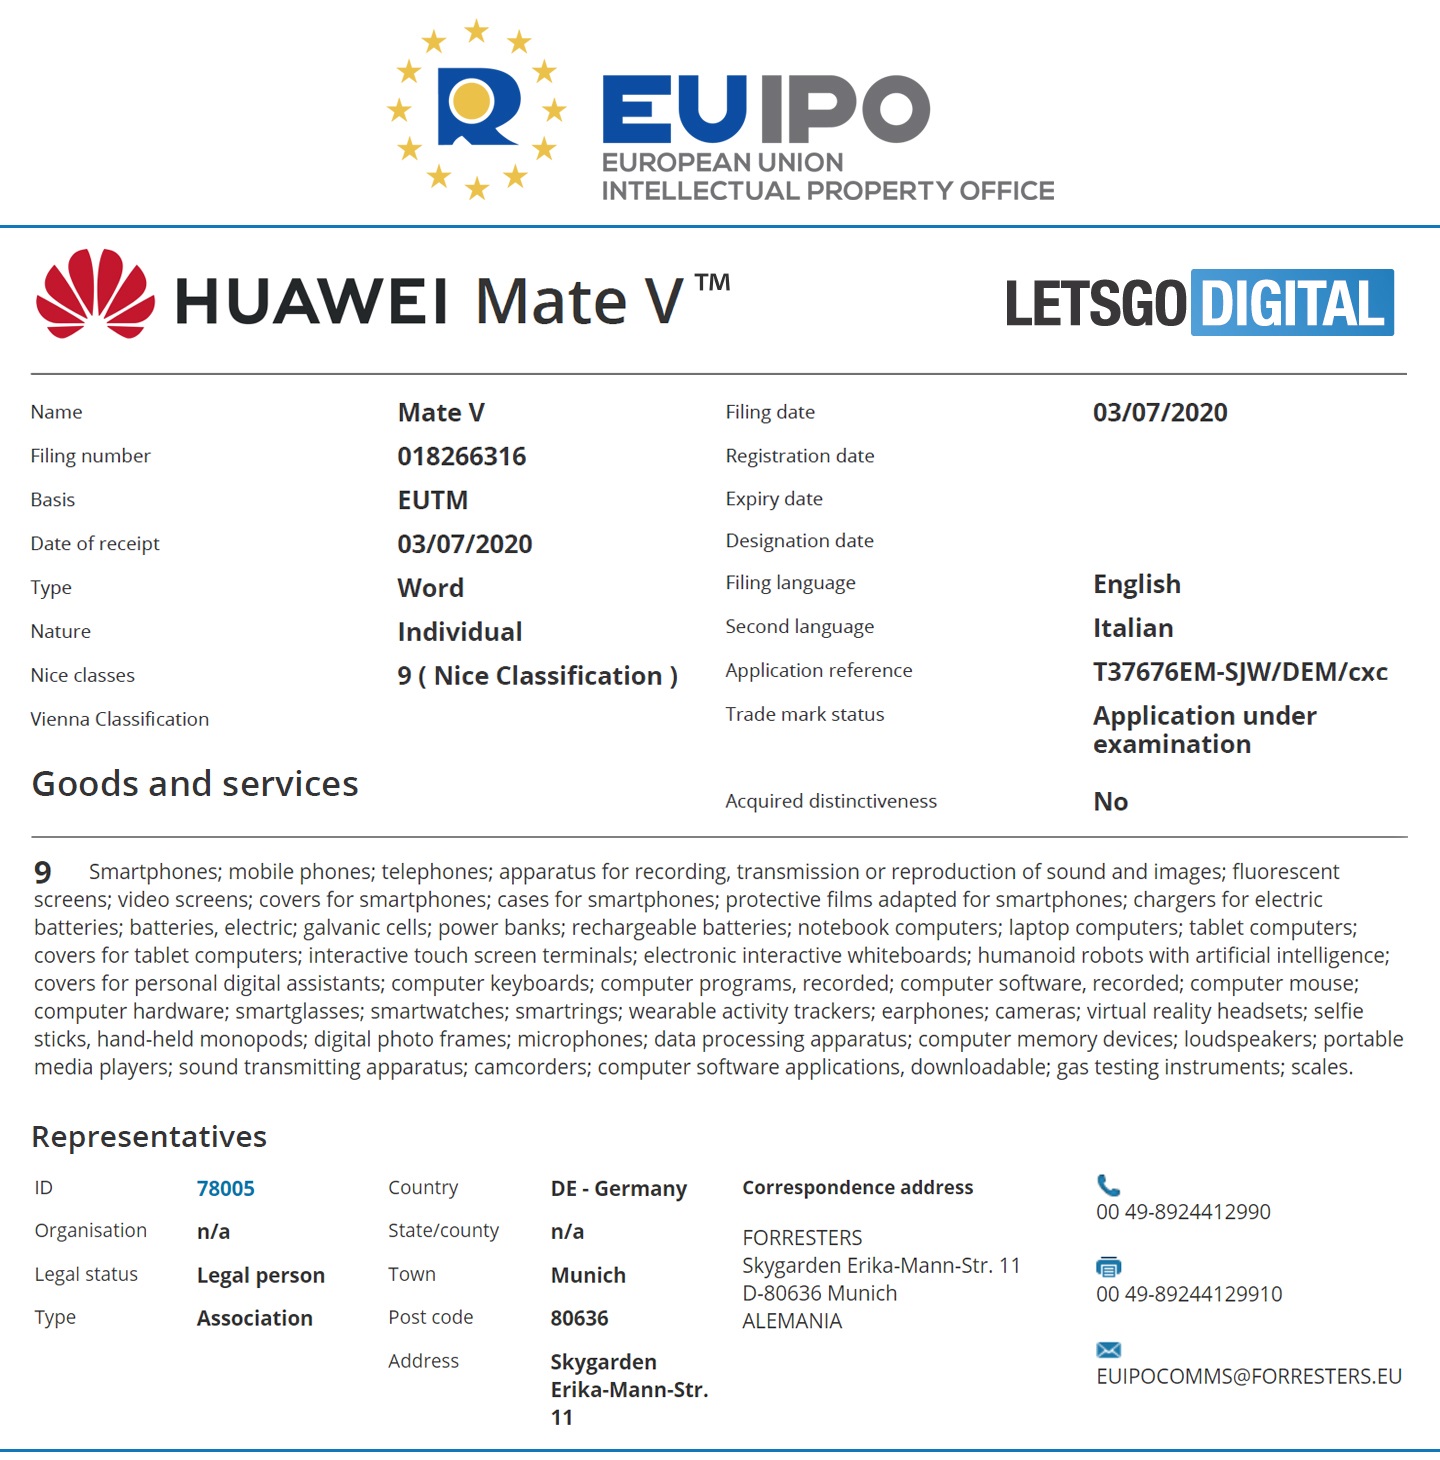 Huawei Mate V EUIPO